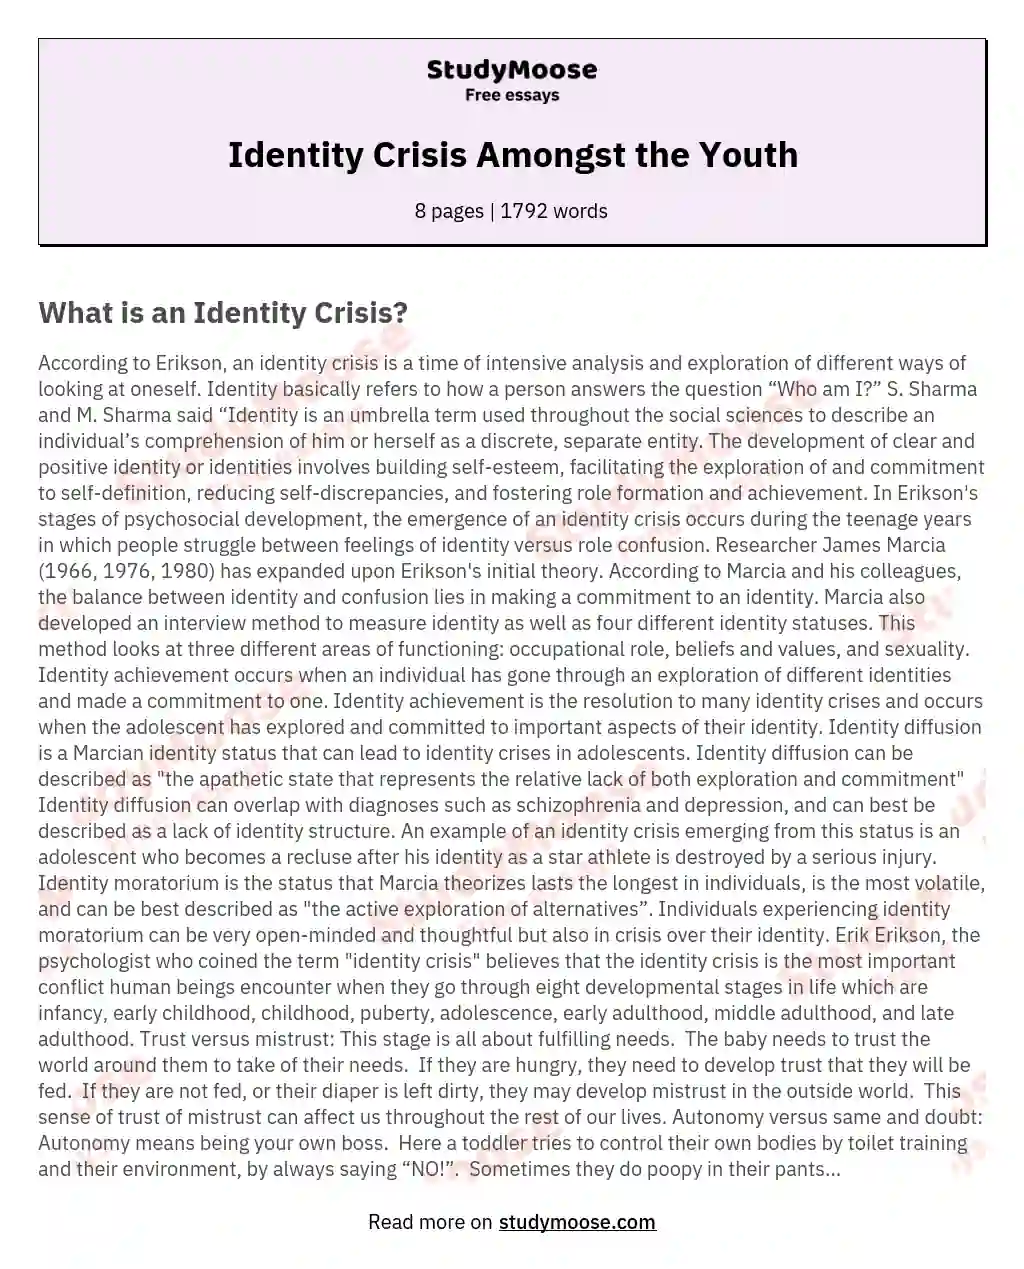 what is identity moratorium